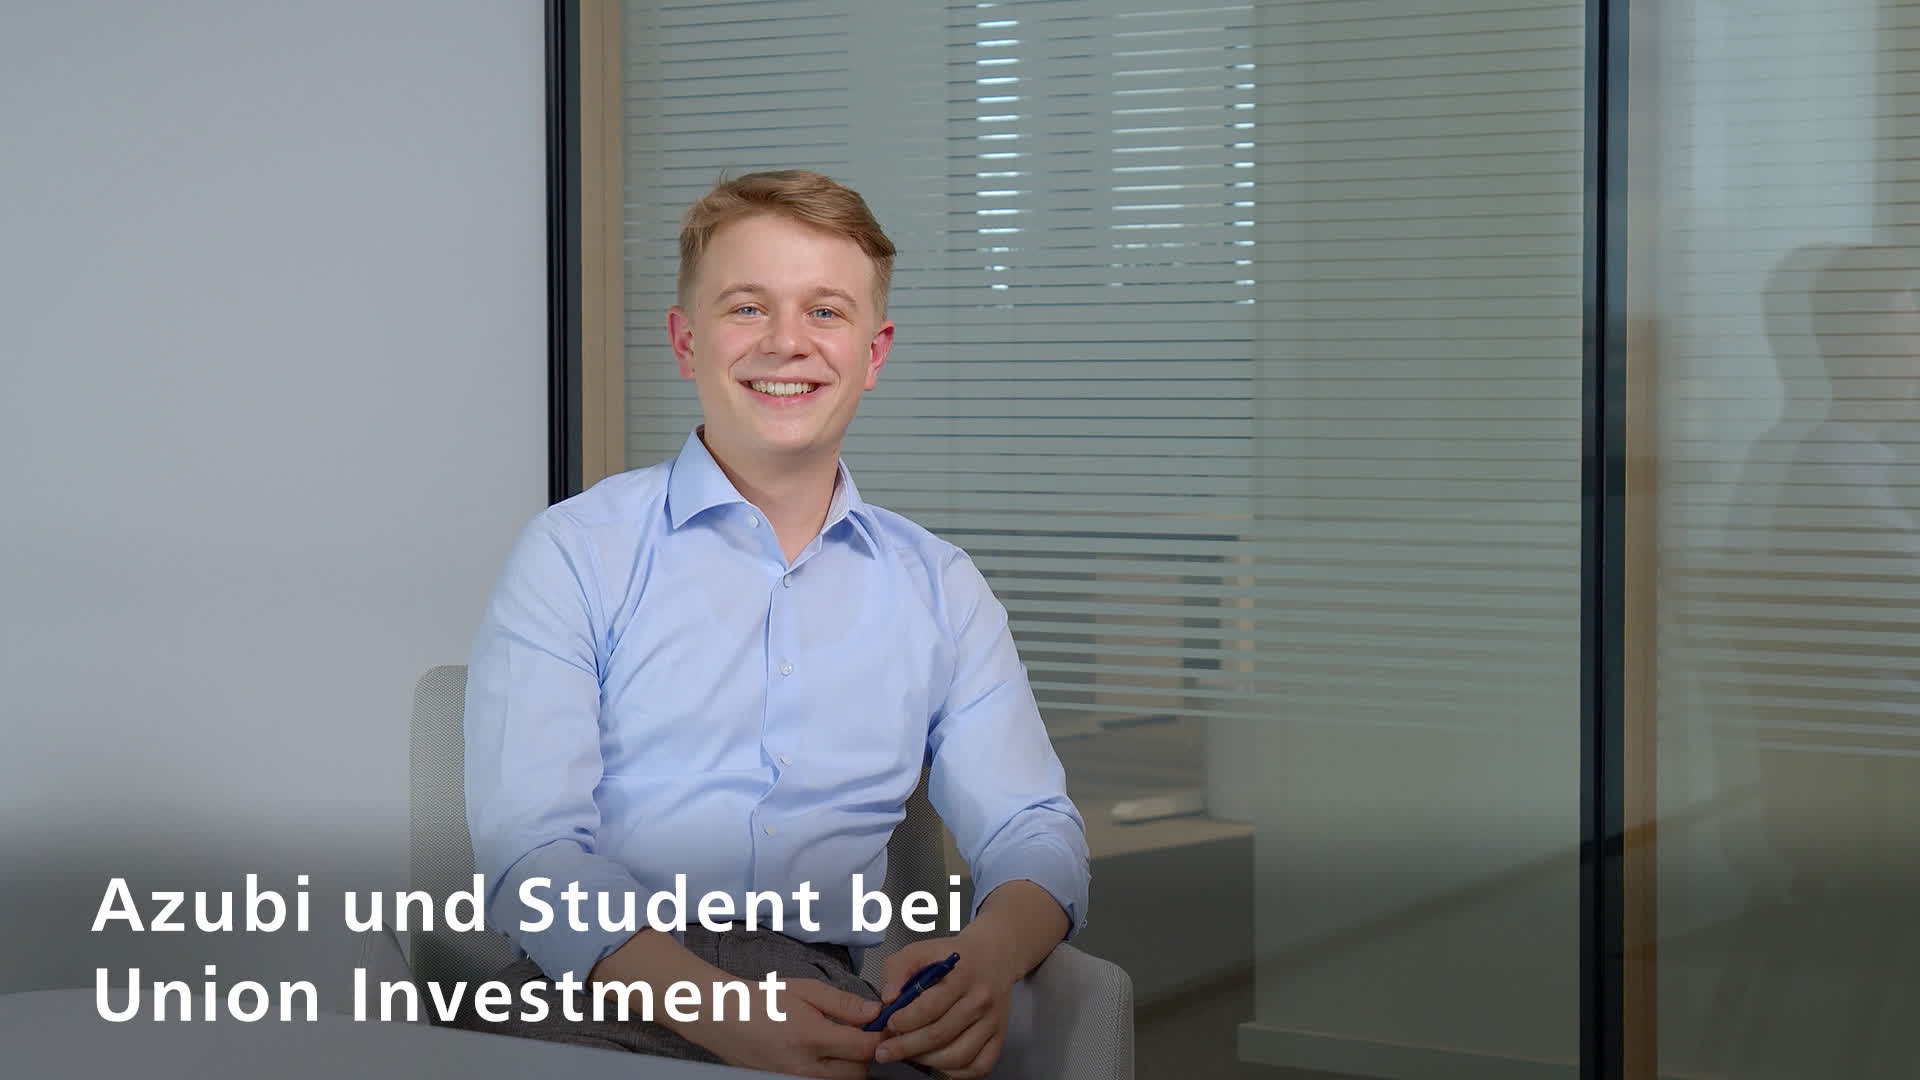 Igor Lange, Azubi und Student bei Union Investment